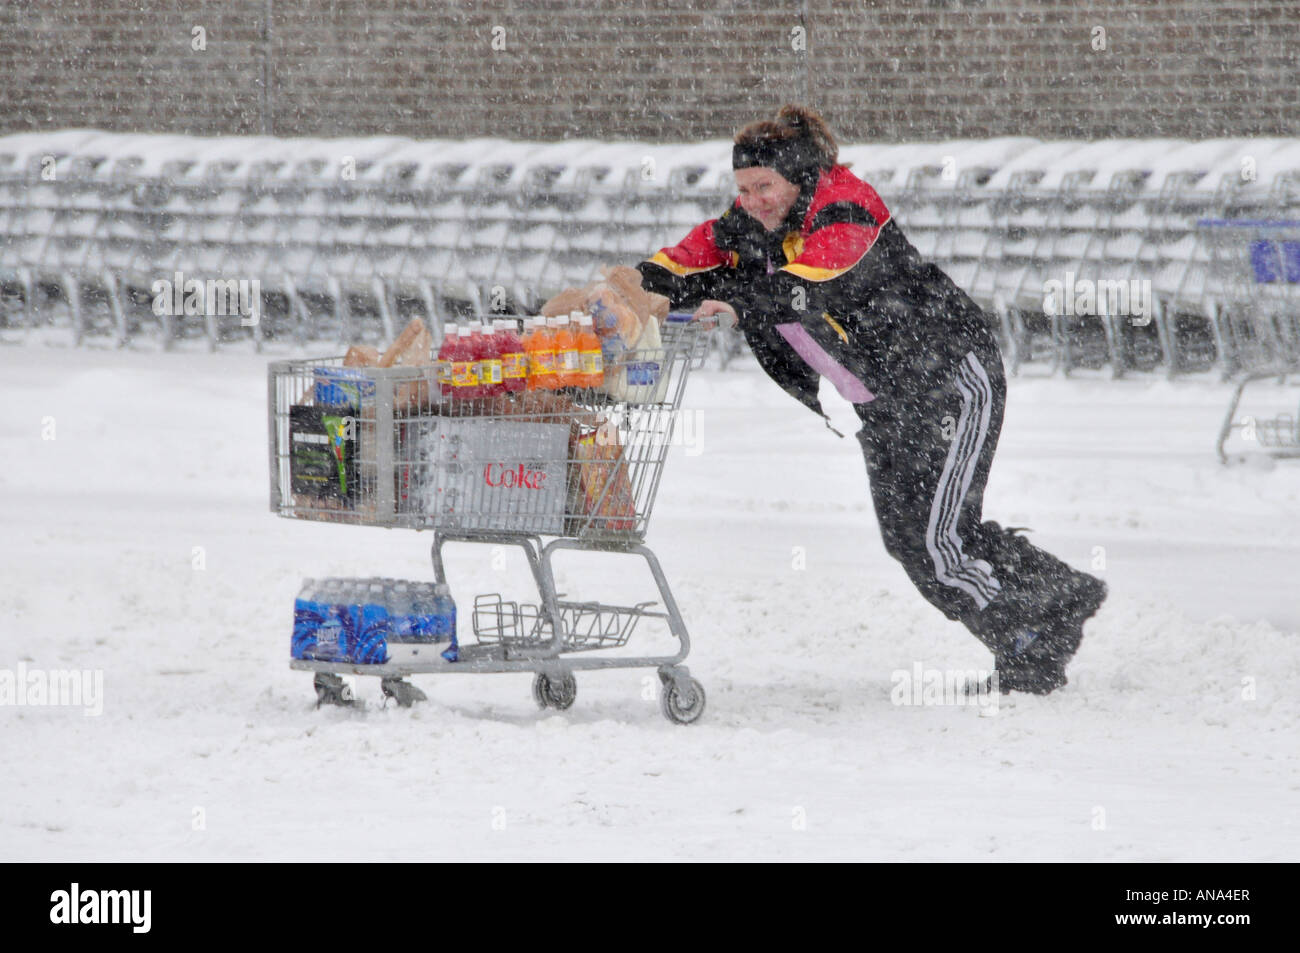 Tiendas de comestibles durante una tormenta de nieve de invierno durante la temporada de invierno en los suburbios de Detroit, Michigan Foto de stock